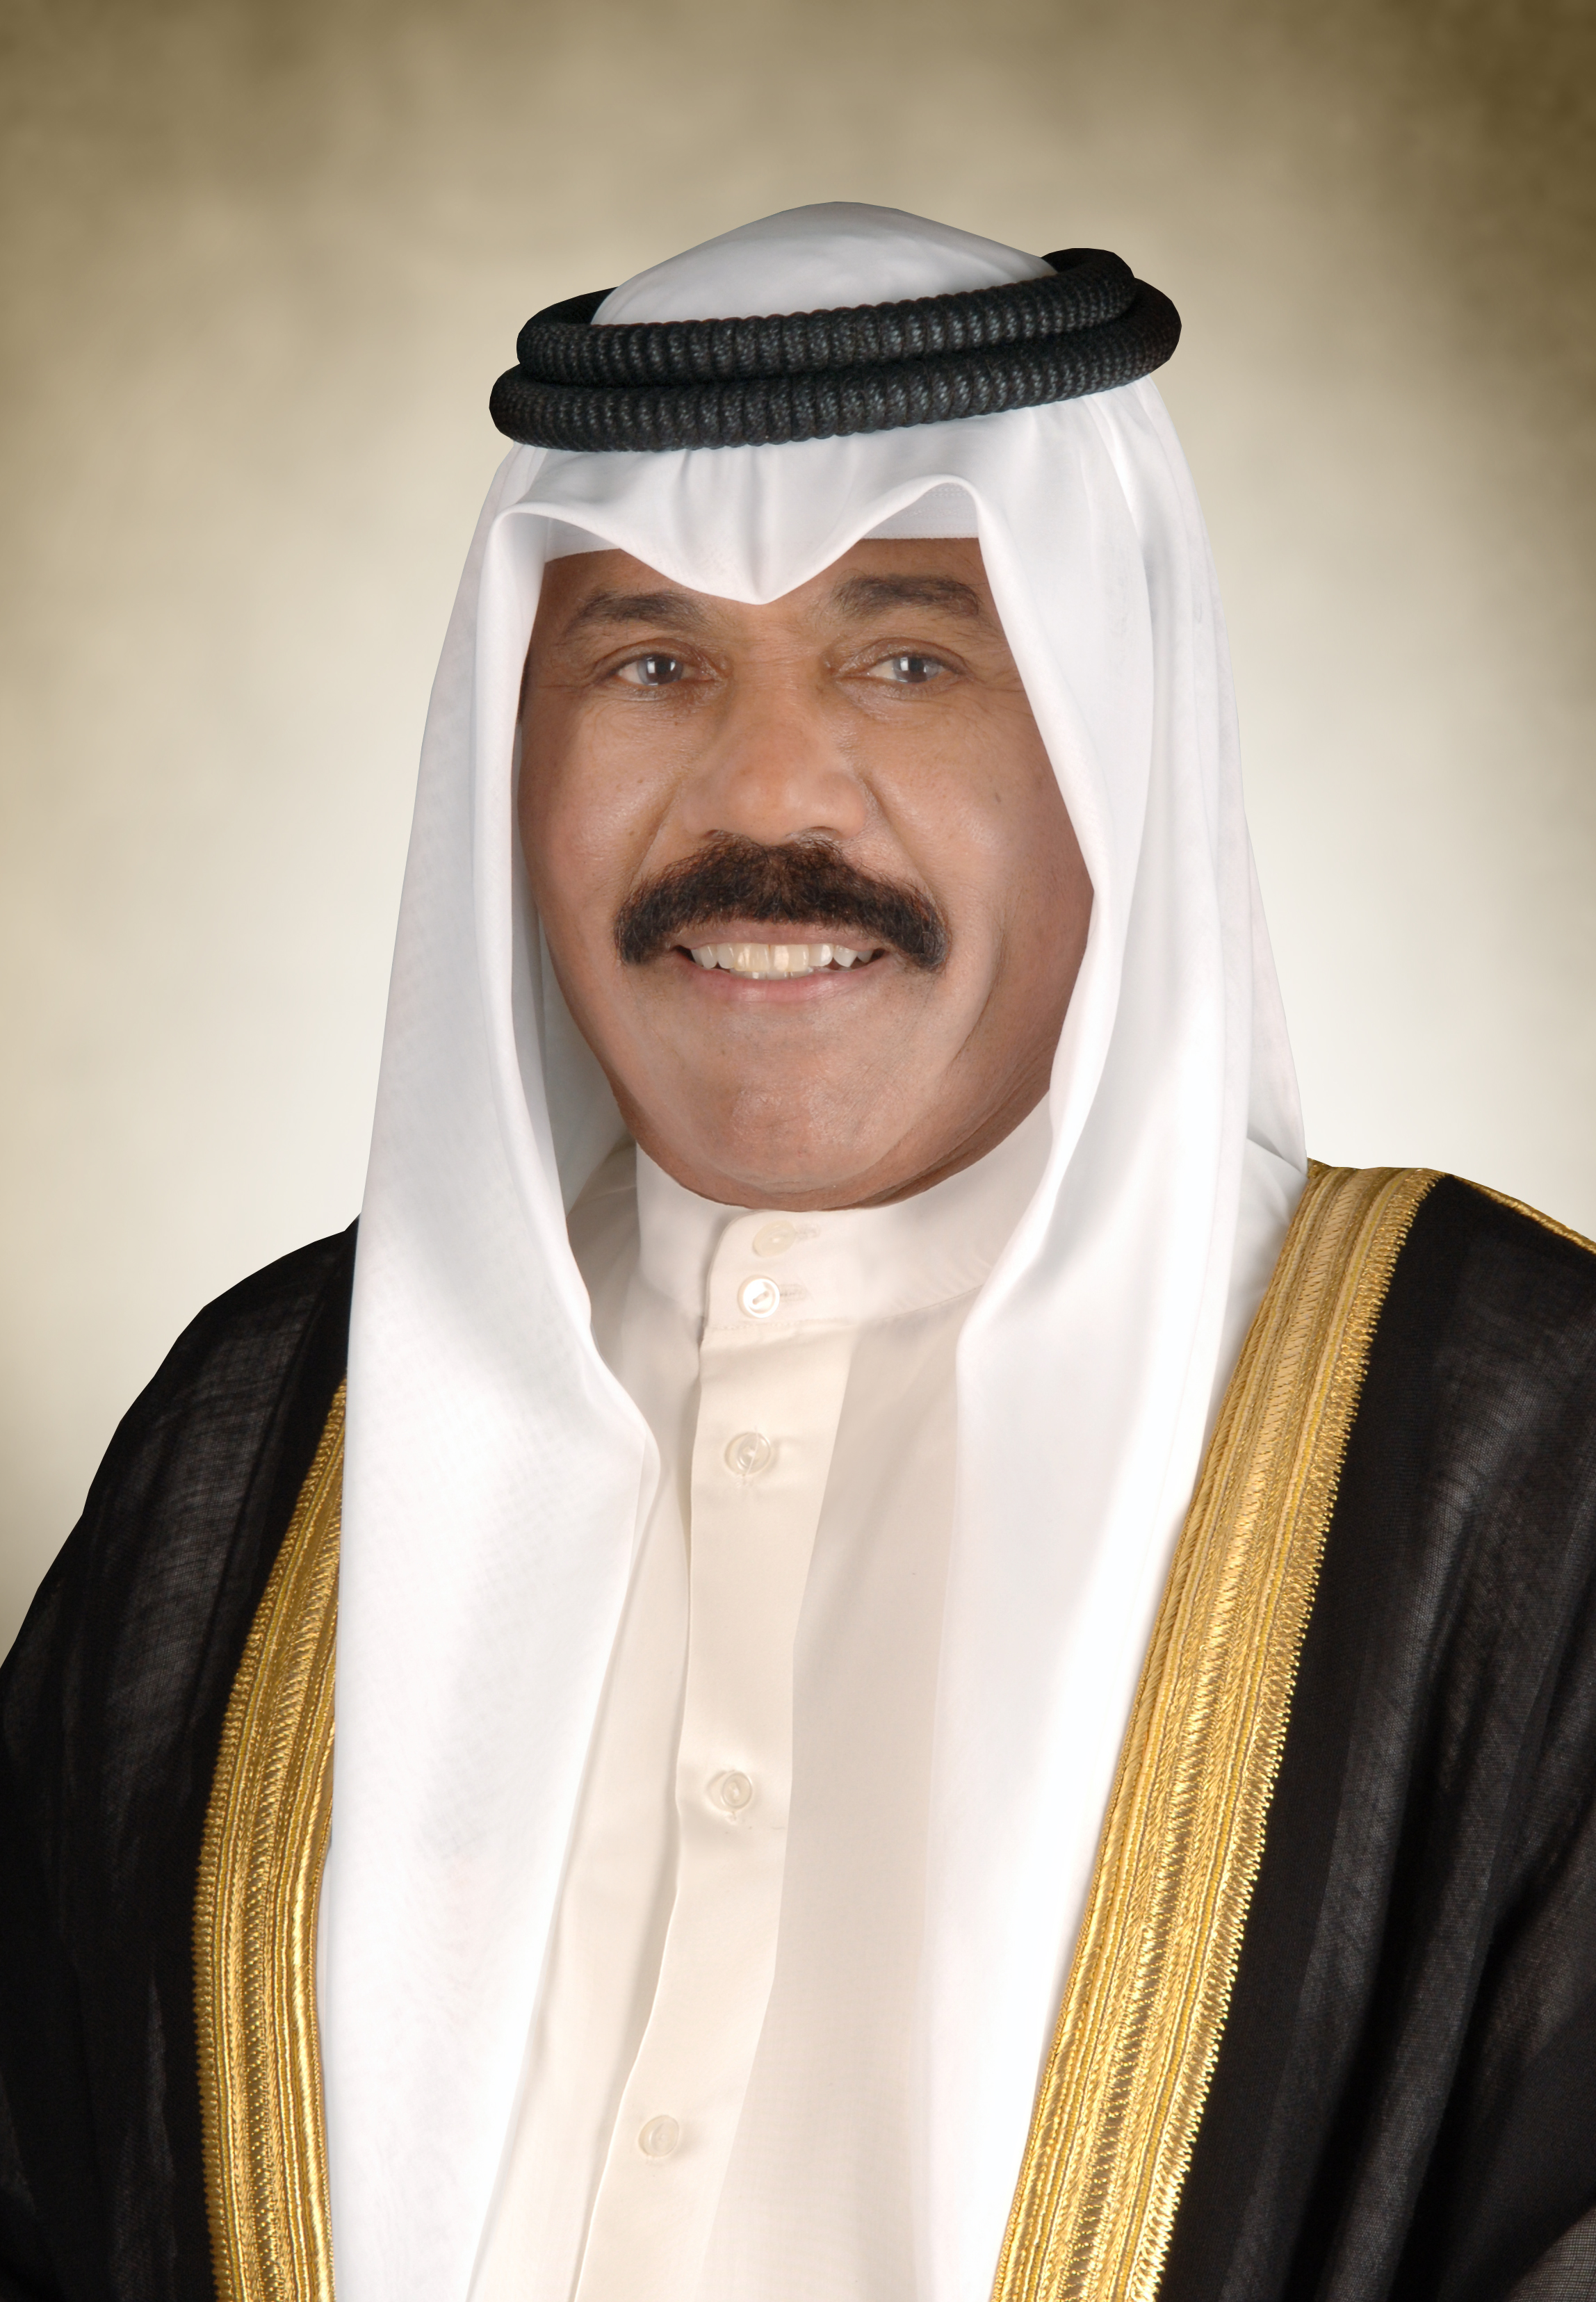 صاحب السمو يهنئ مدير عام بلدية الكويت بمنحه جائزة التميز الحكومي العربي